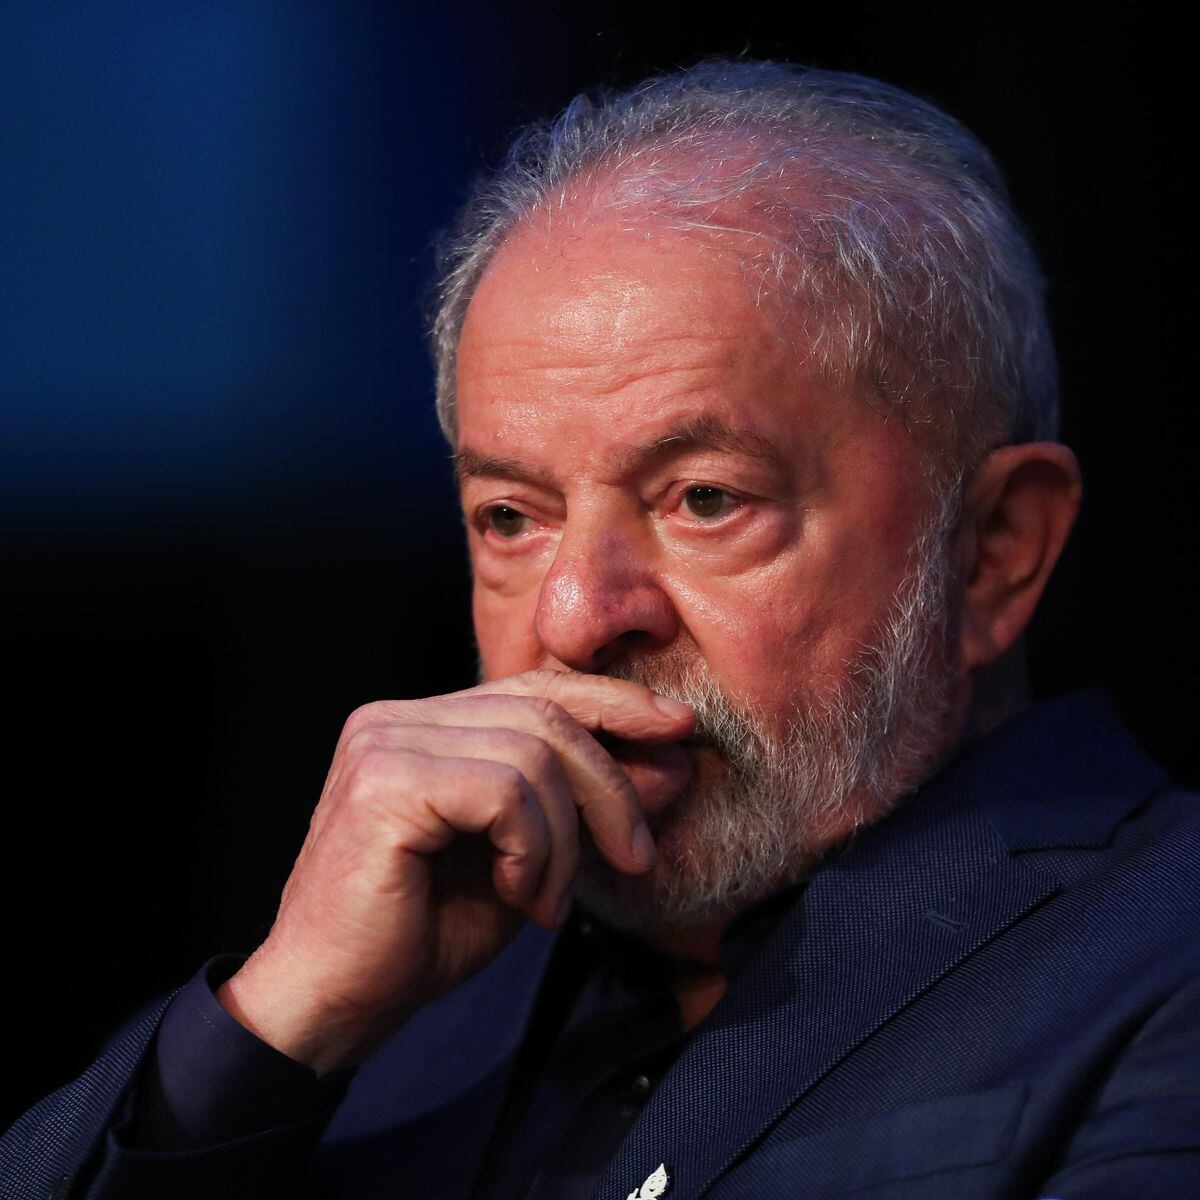 Em aceno a evangélicos, governo Lula firma parcerias com igrejas, Política